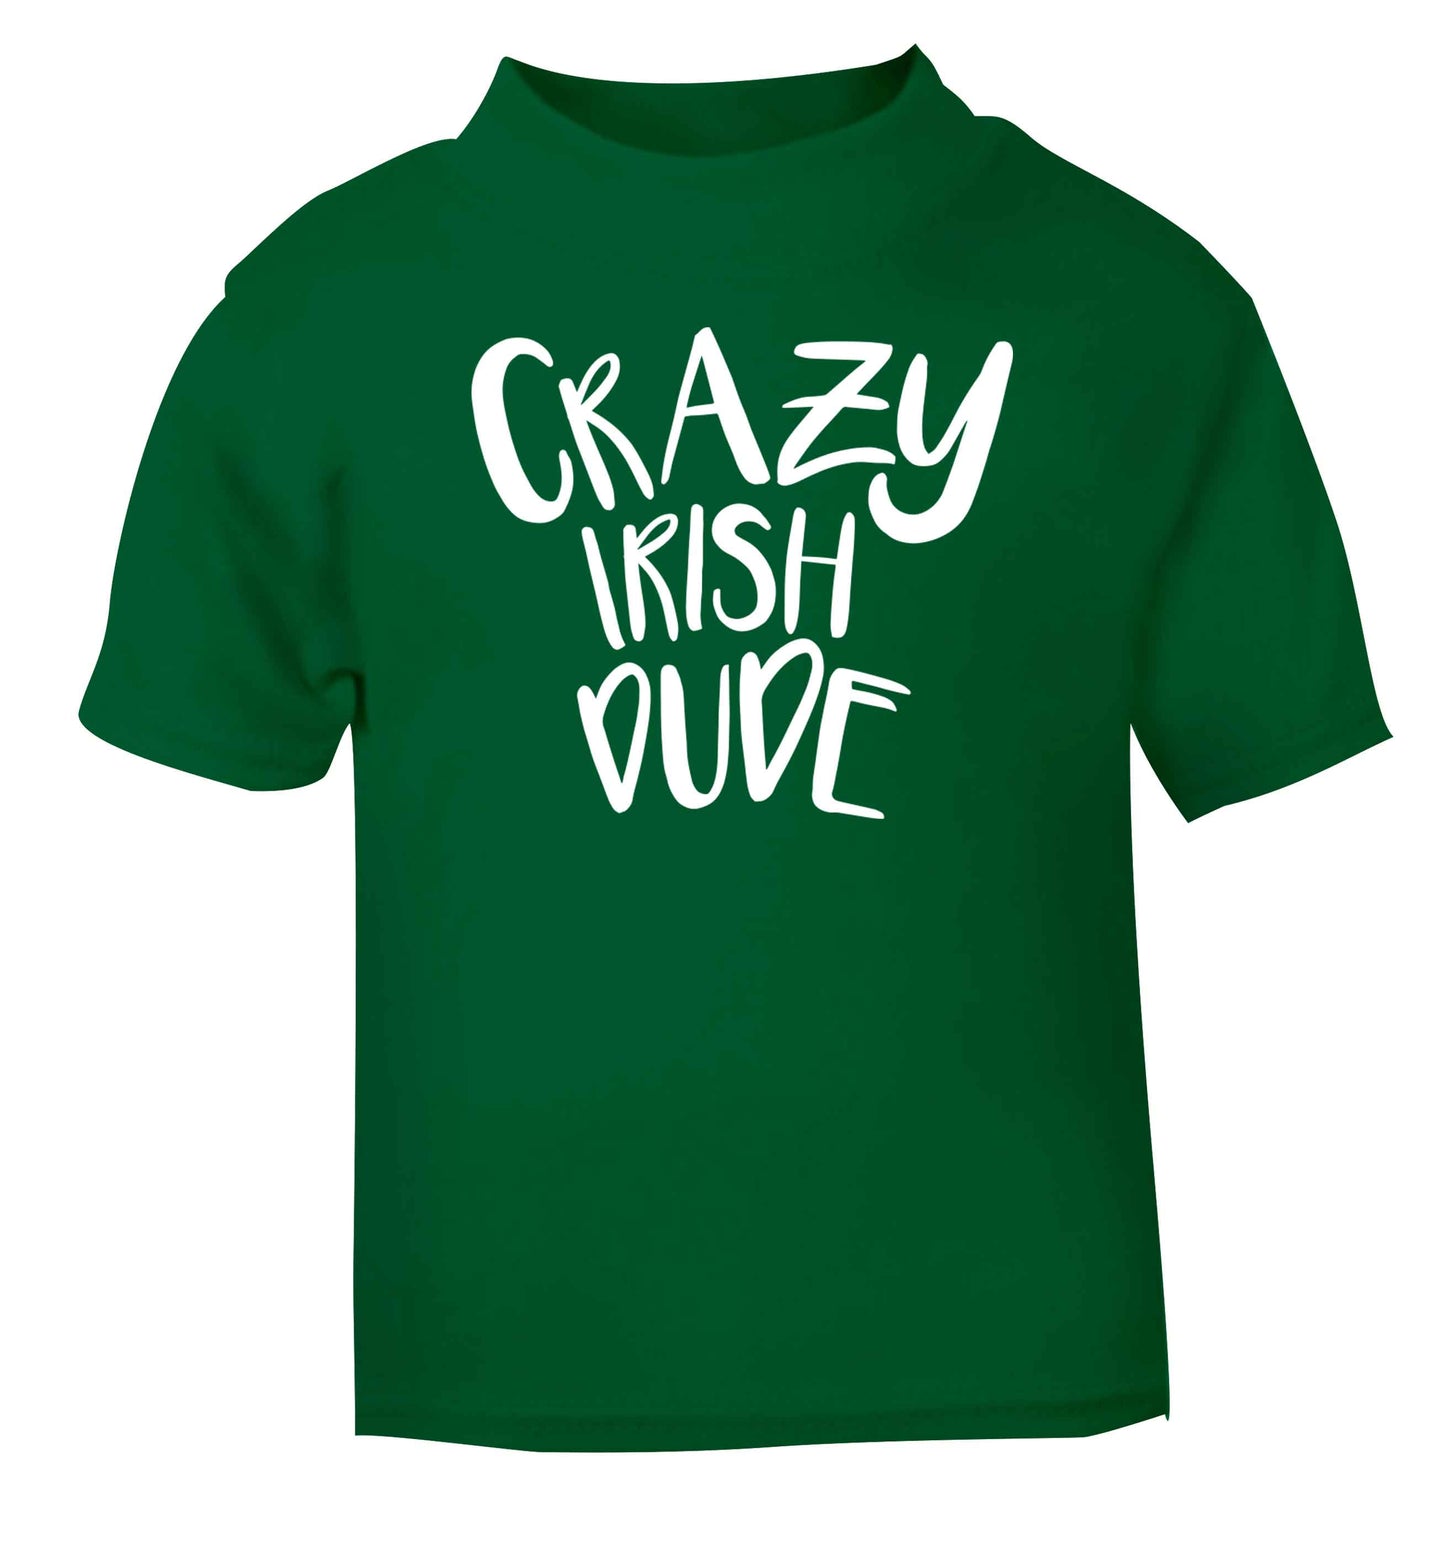 Crazy Irish dude green baby toddler Tshirt 2 Years